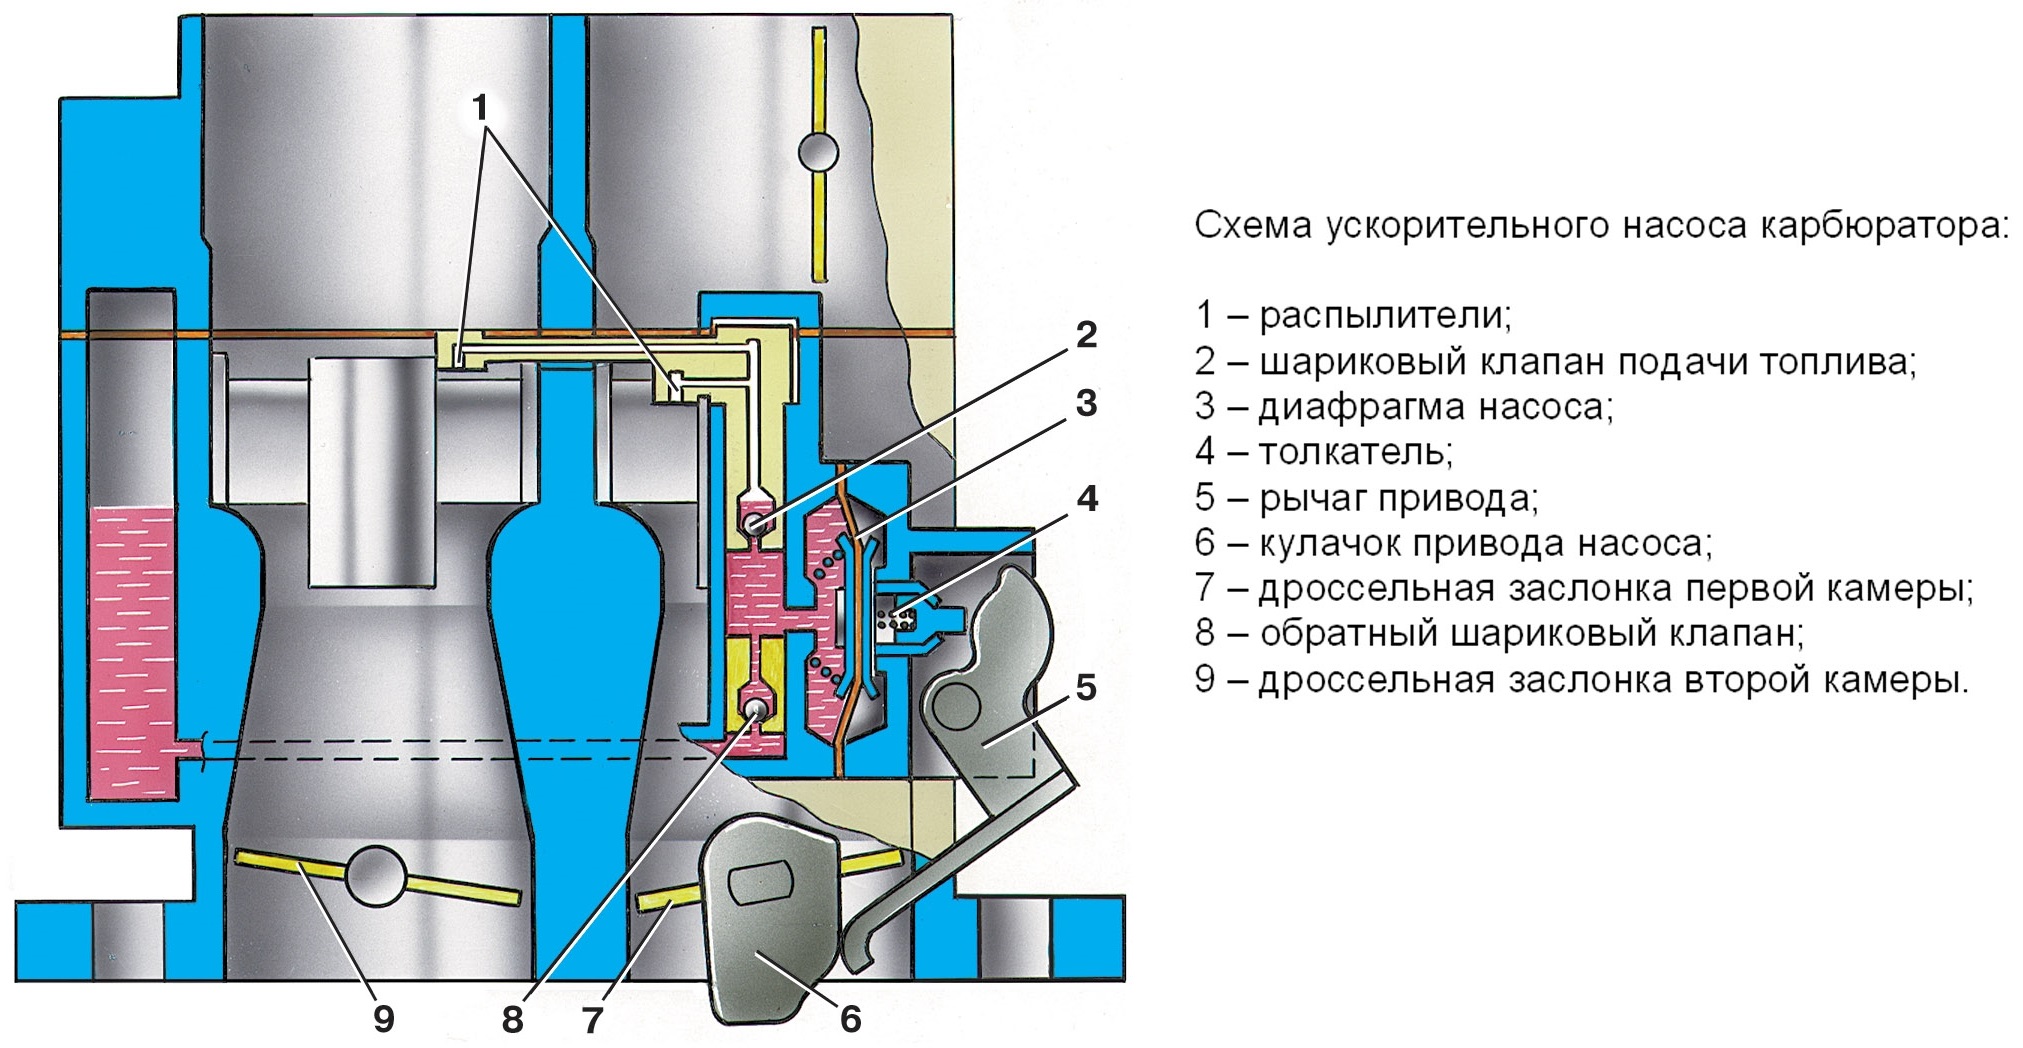 Схема ускорительного насоса карбюратора